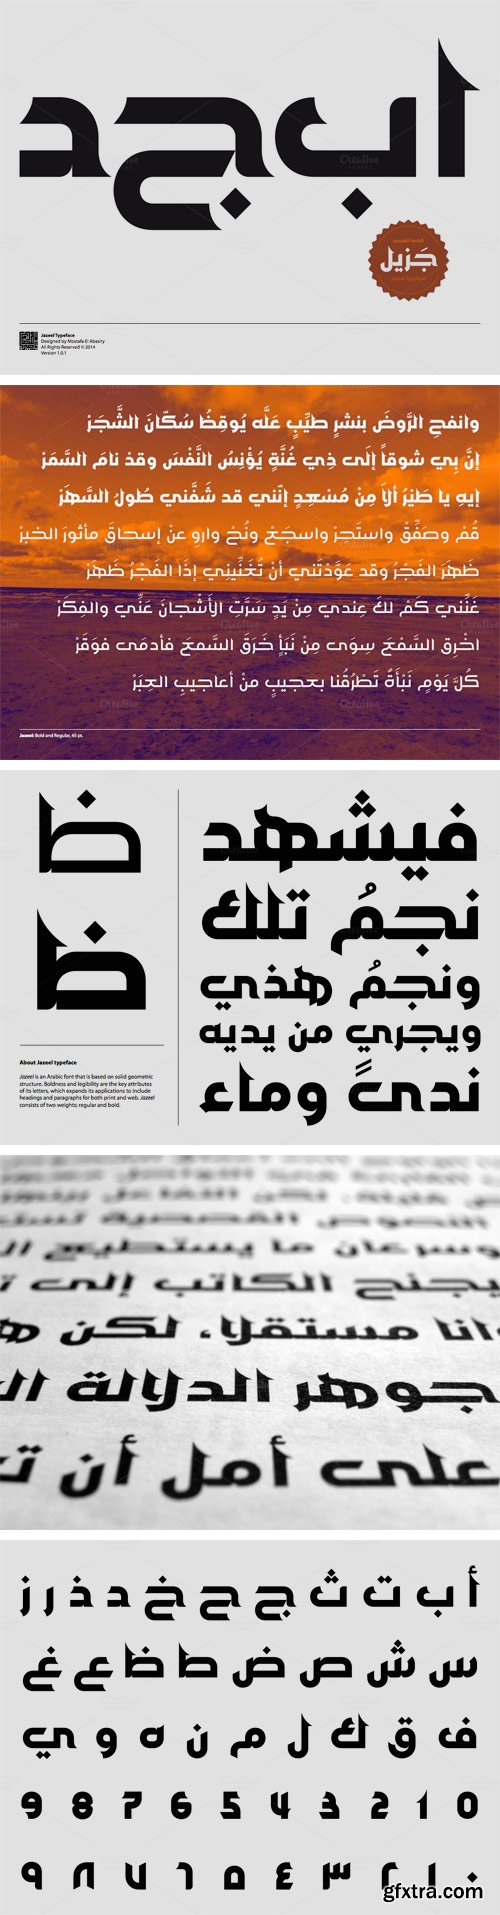 Jazeel Arabic Typeface